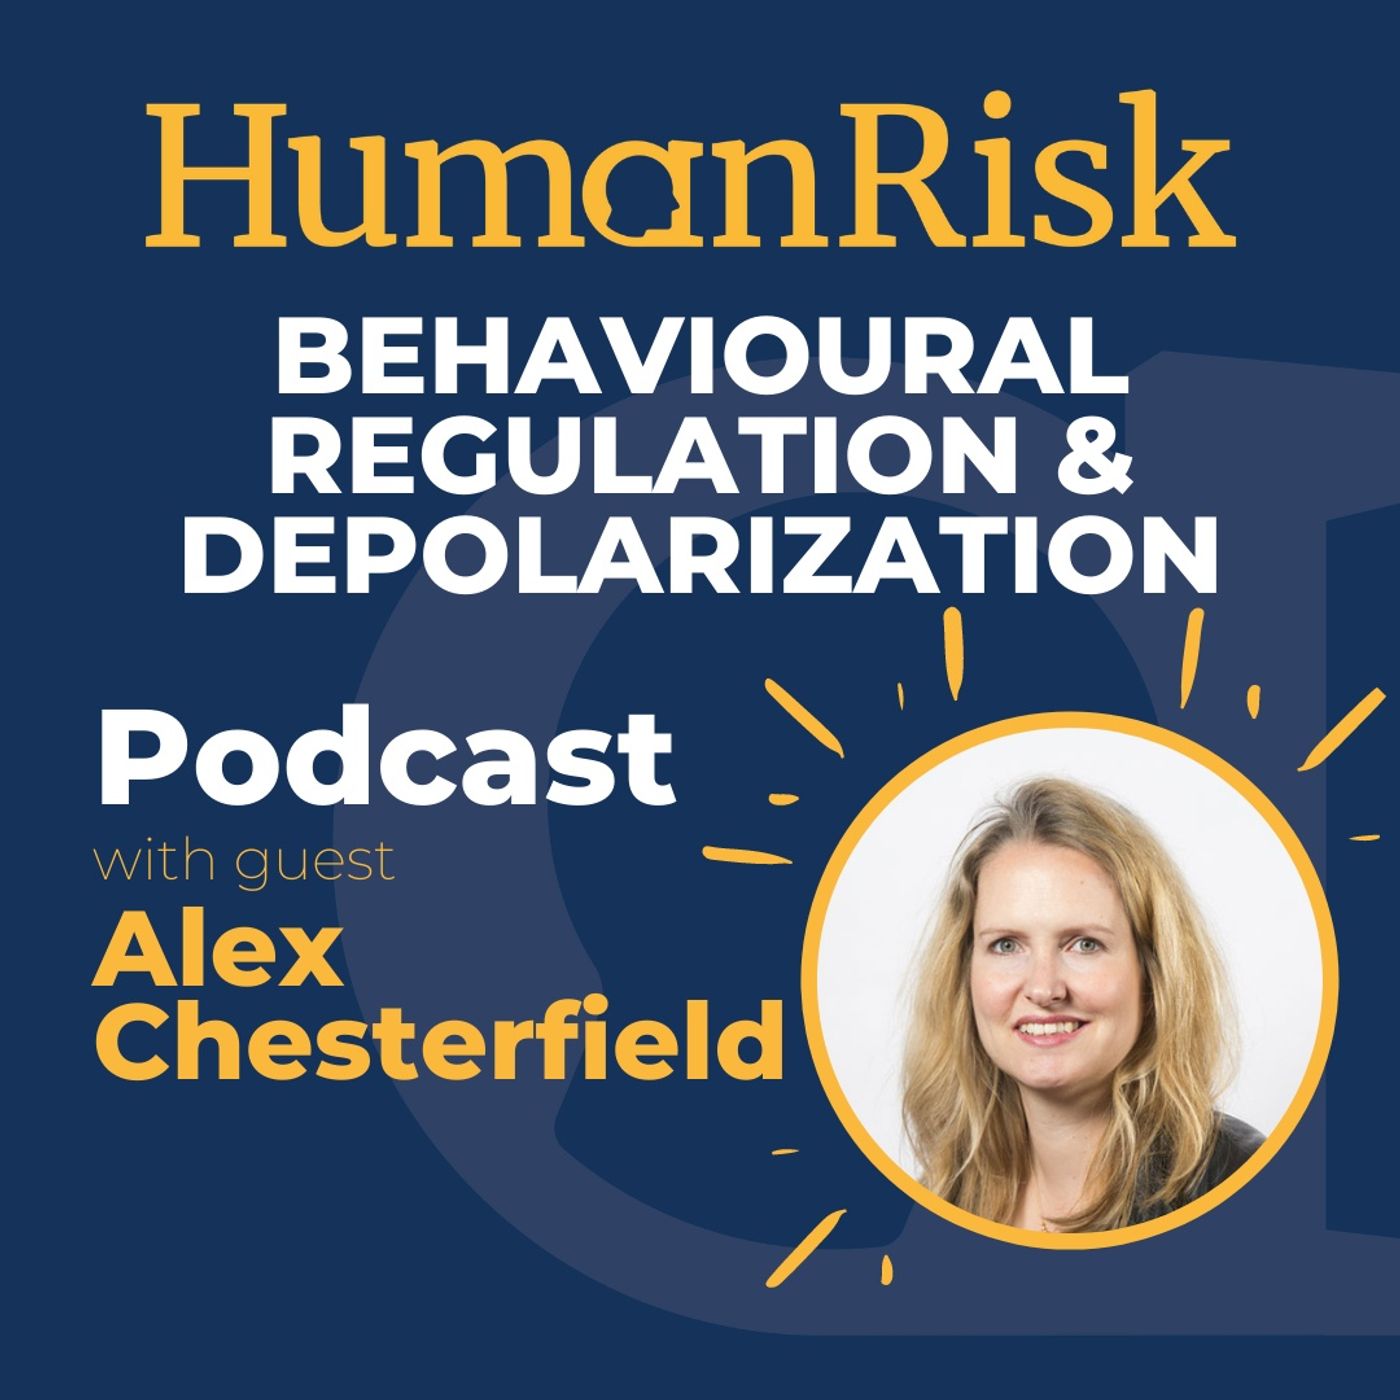 Alex Chesterfield on Behavioural Regulation & Depolarization